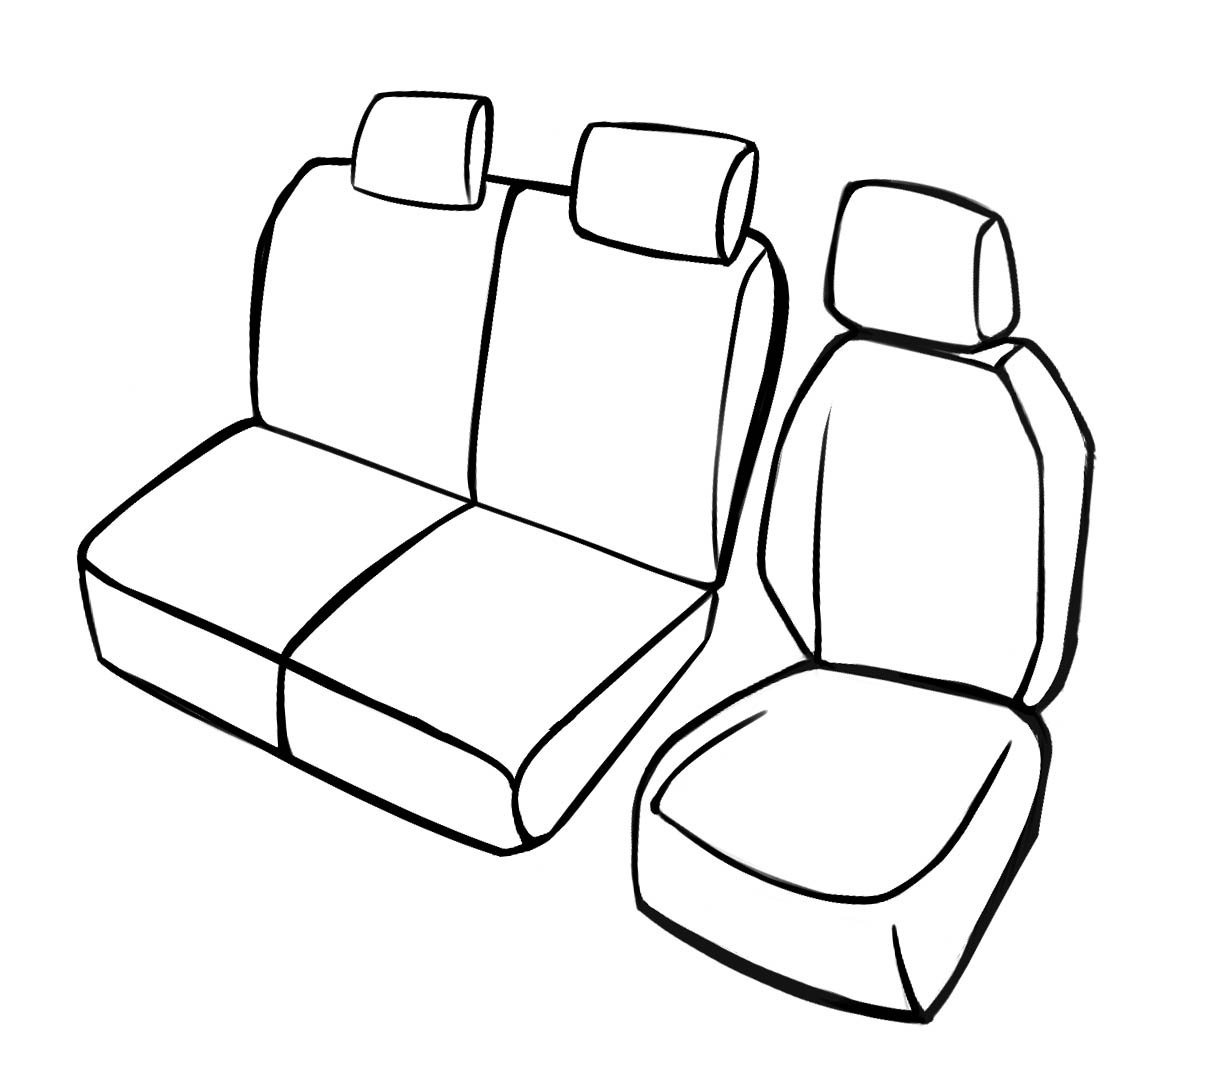 Premium Housse de siège pour Ford Tourneo Connect/Grand Tourneo Connect V408 09/2013- auj., 1 housse de siège simple avant + housse d'accoudoir, 1 couverture de banc double